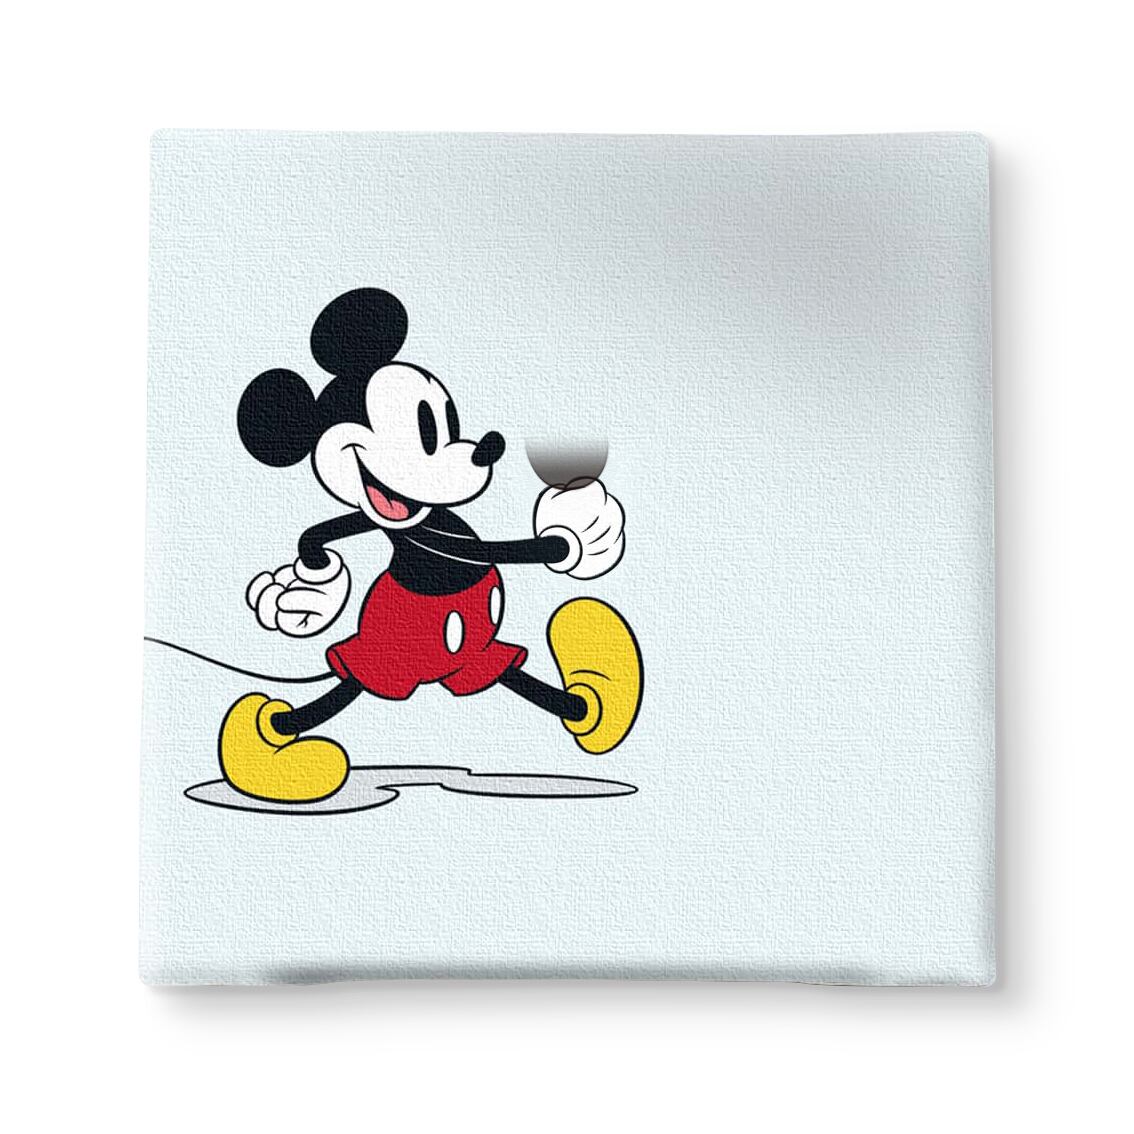 ディズニー アートパネル ミッキー ミッキーマウス 一輪挿し IKE-DSNY-2212-001